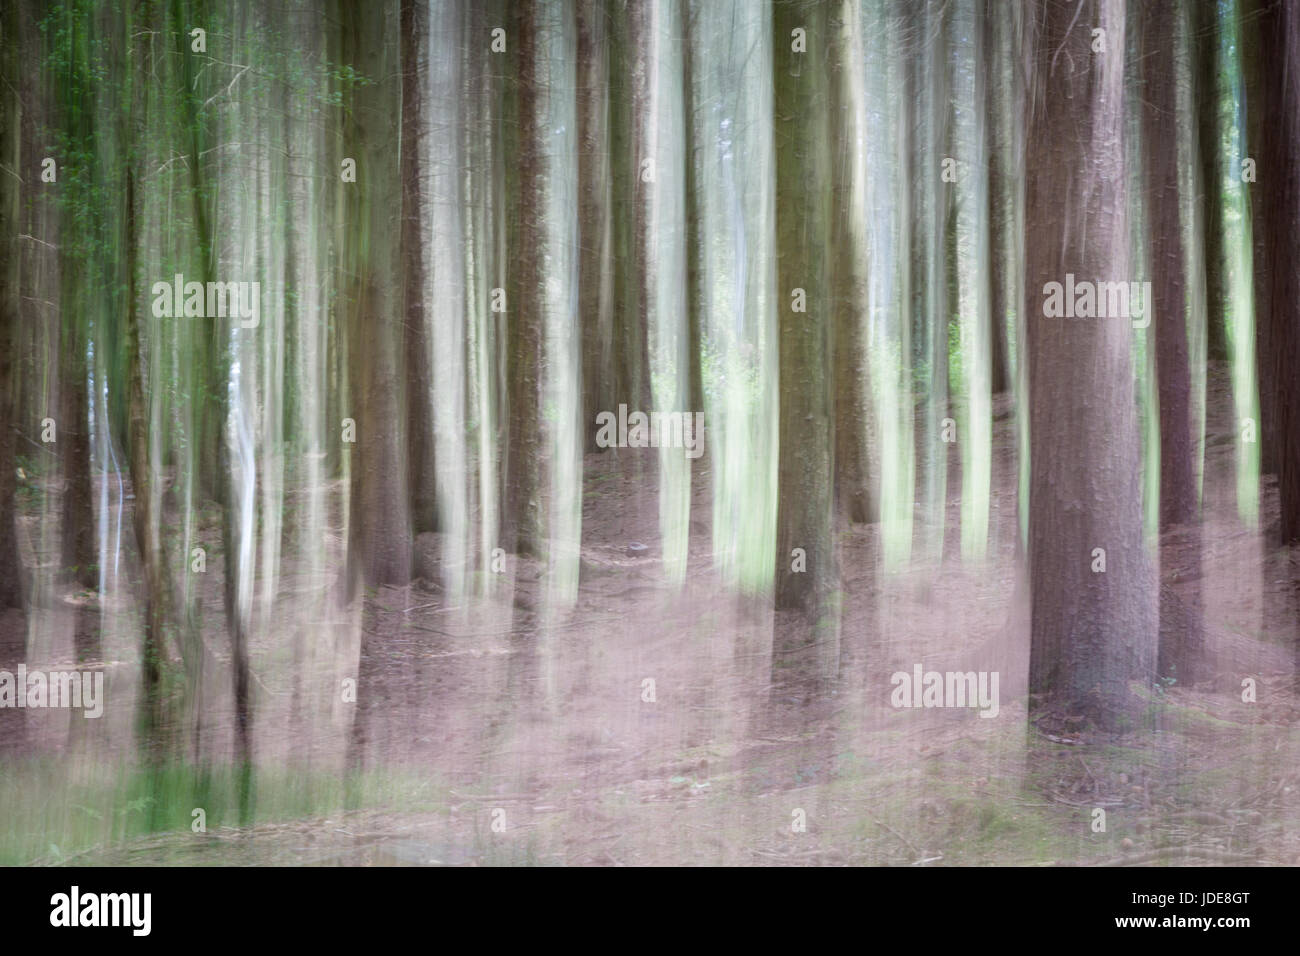 Wildwood, abstrakte Wälder Hintergrund Techniken in der Kamera Stockfoto